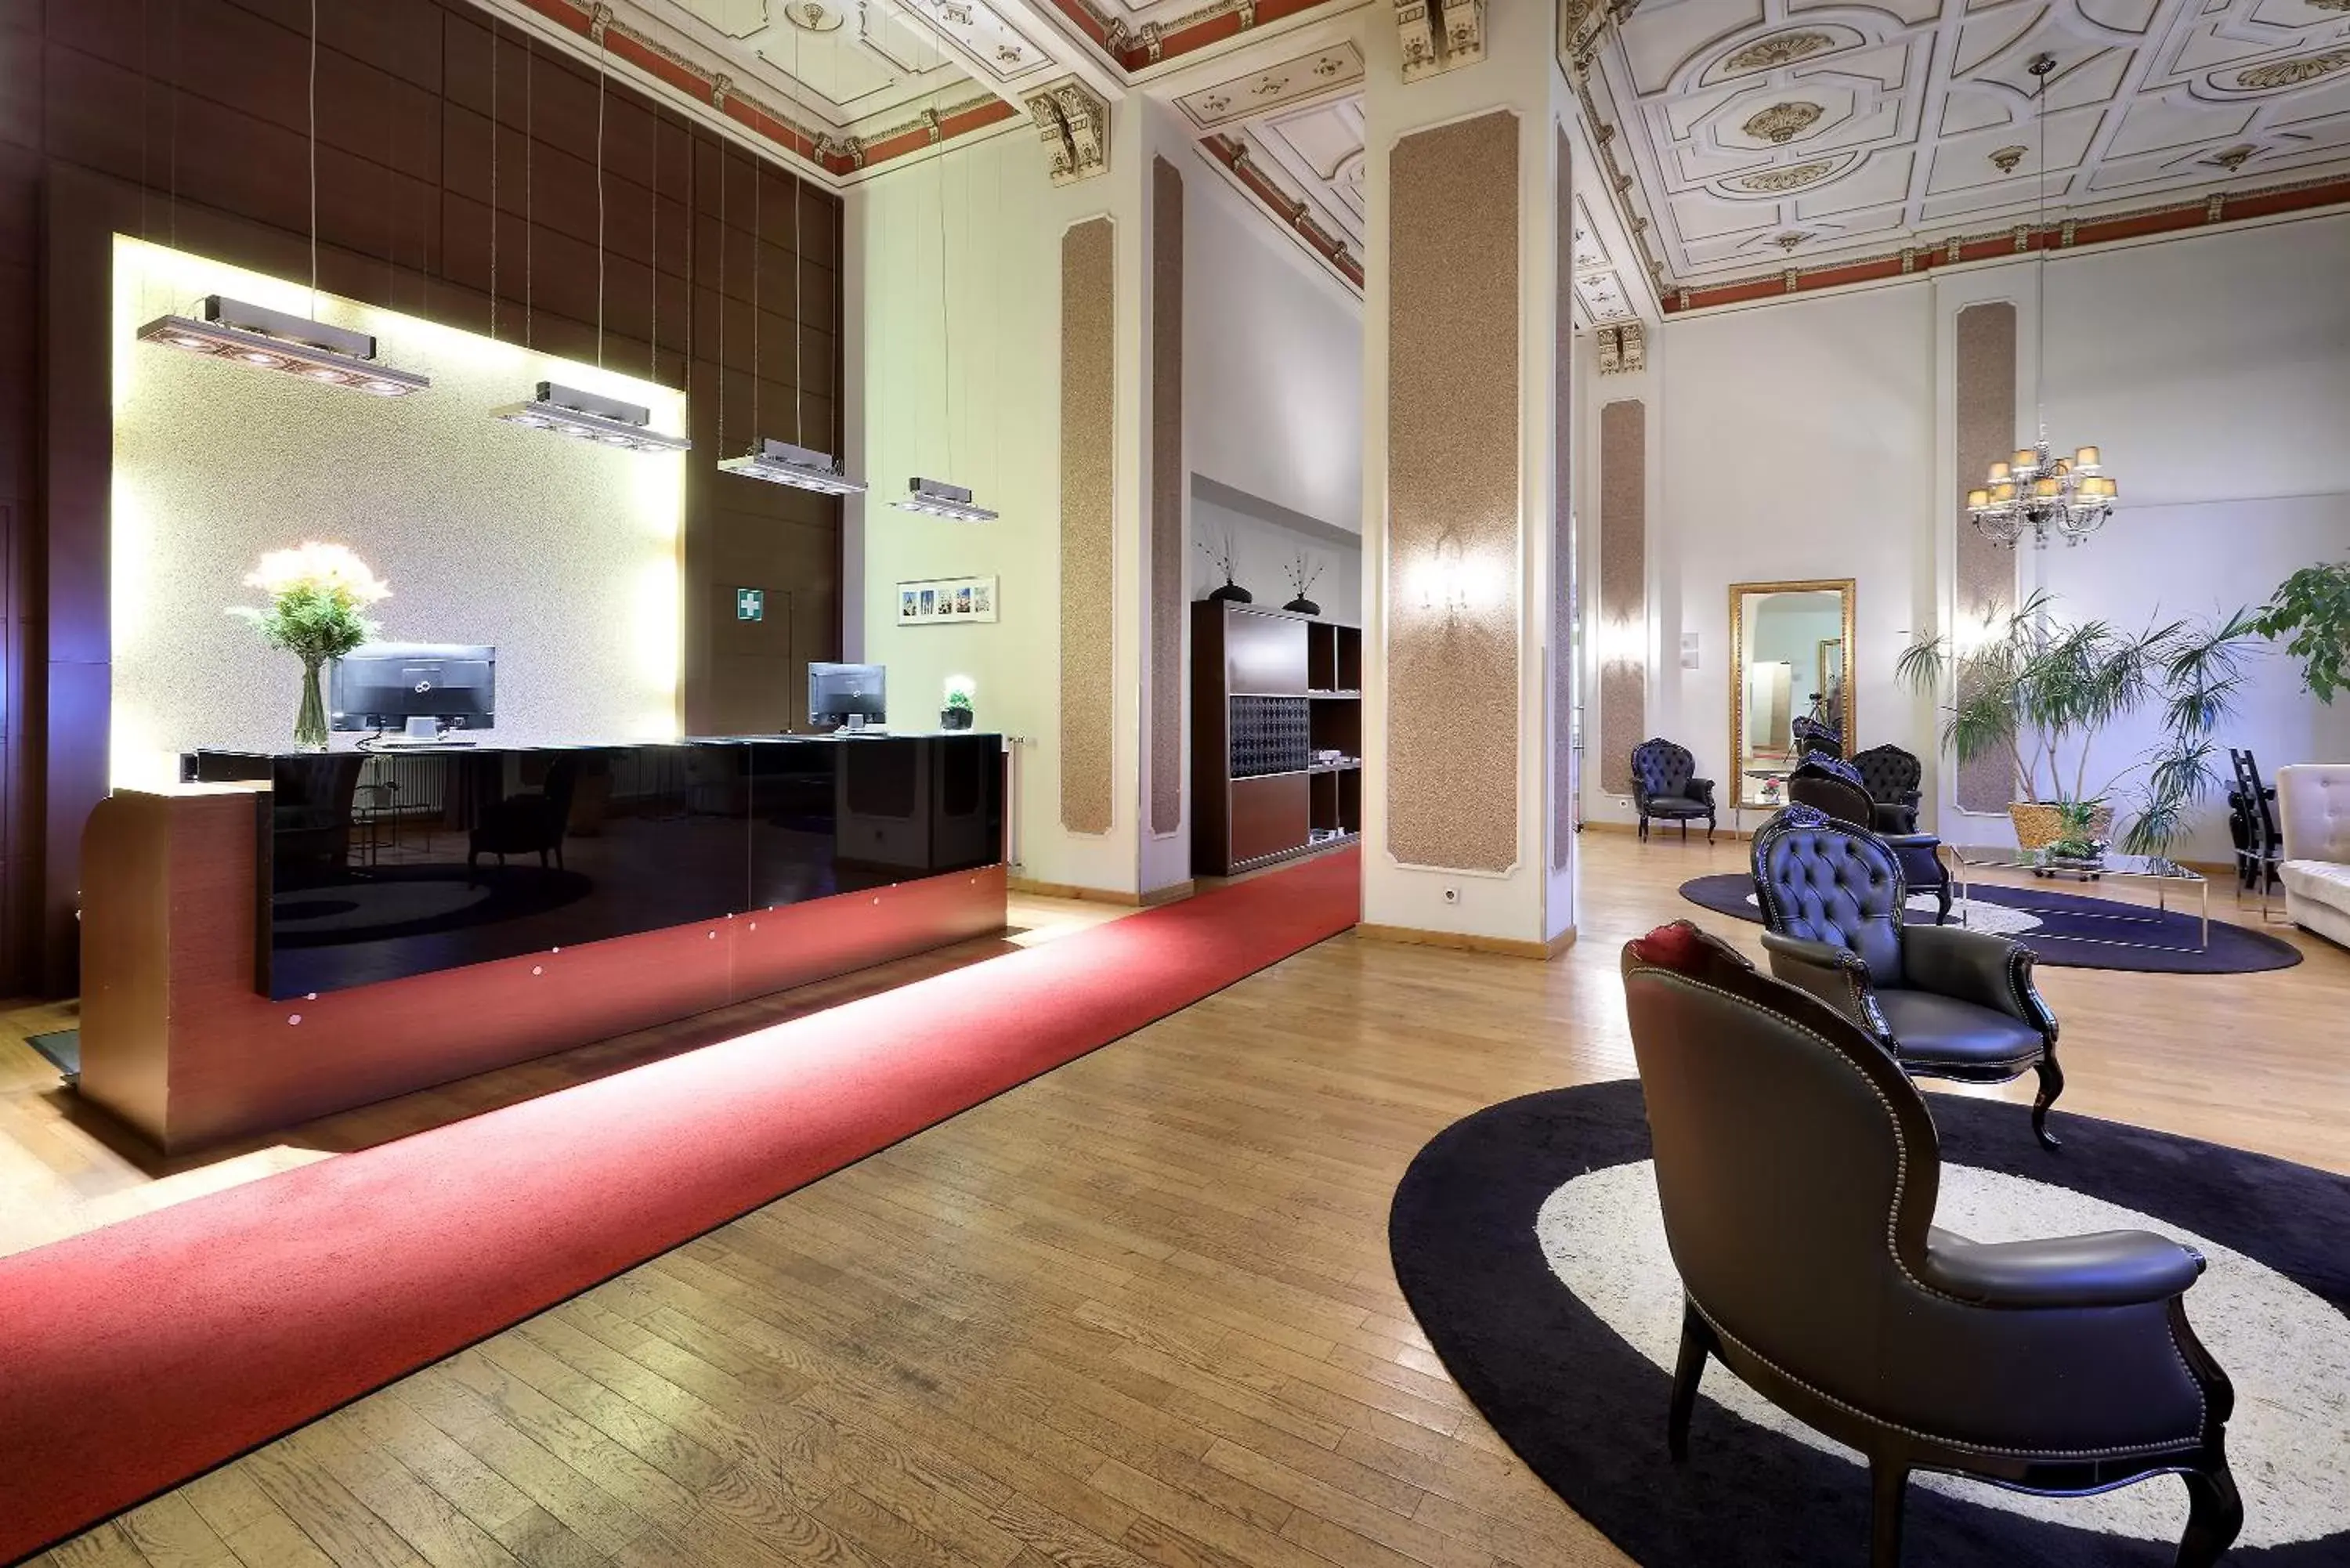 Lobby or reception, Lobby/Reception in Eurostars Park Hotel Maximilian